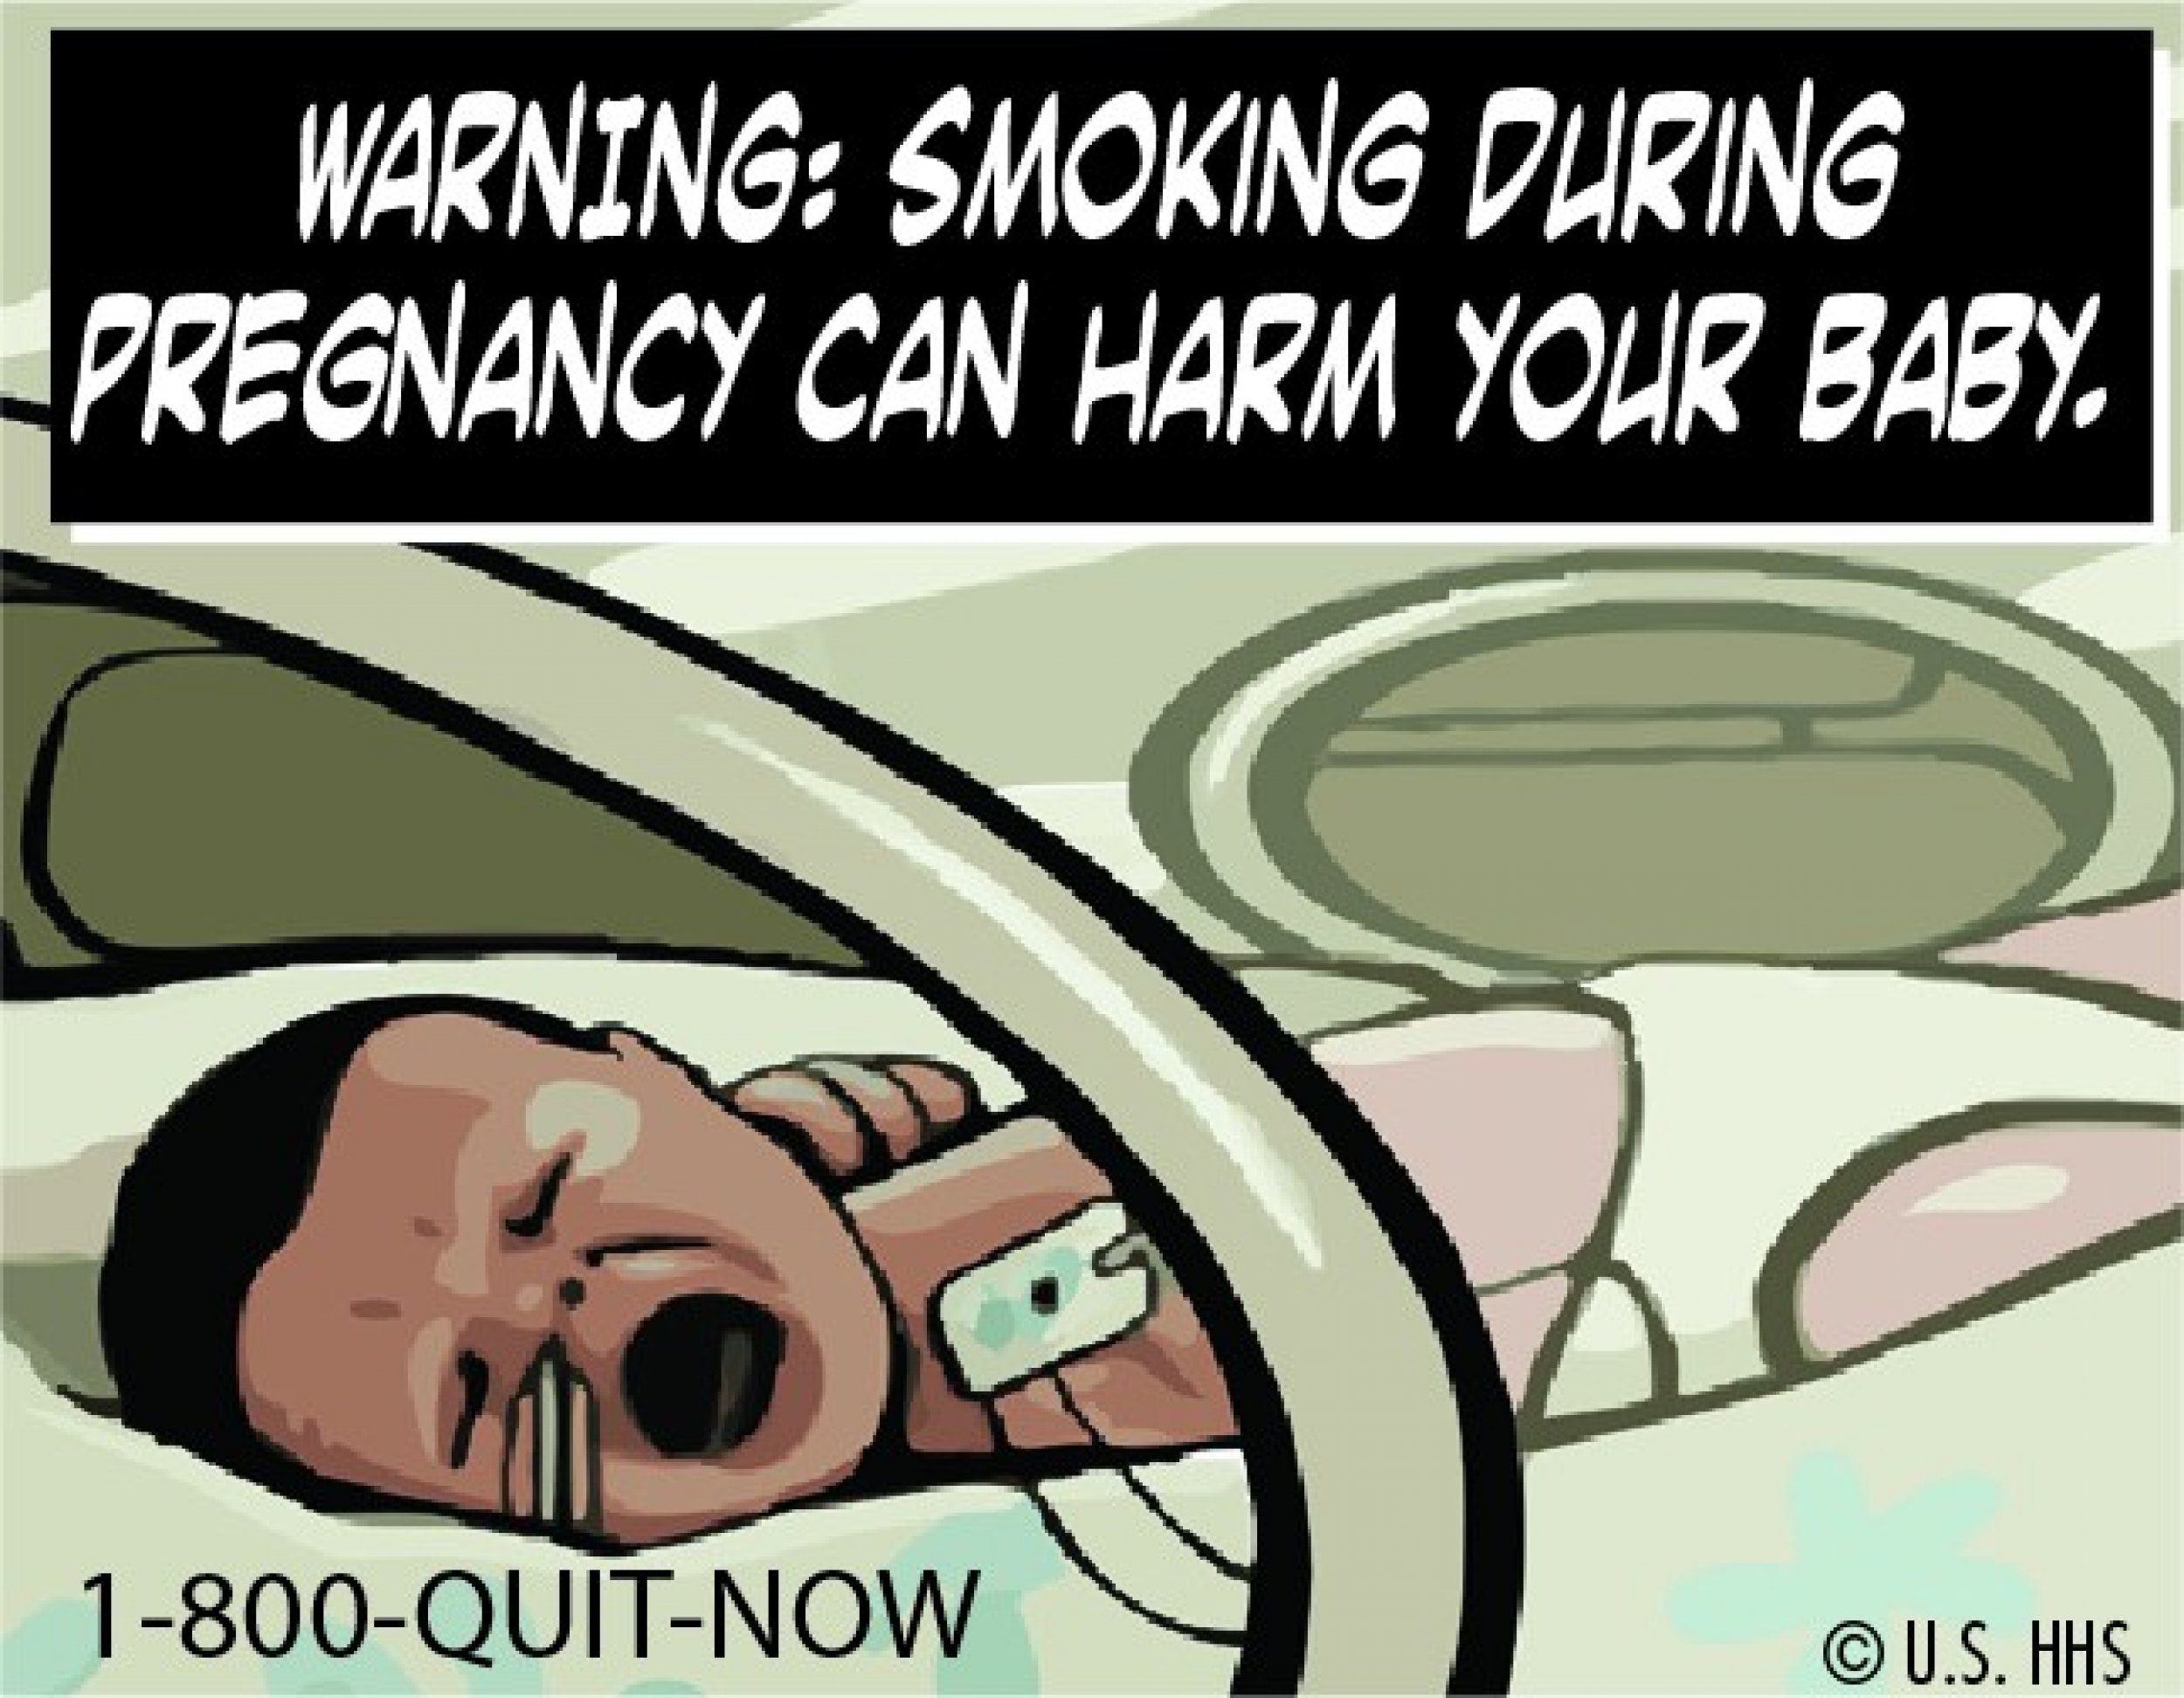 Graphic FDA cigarette warning lables